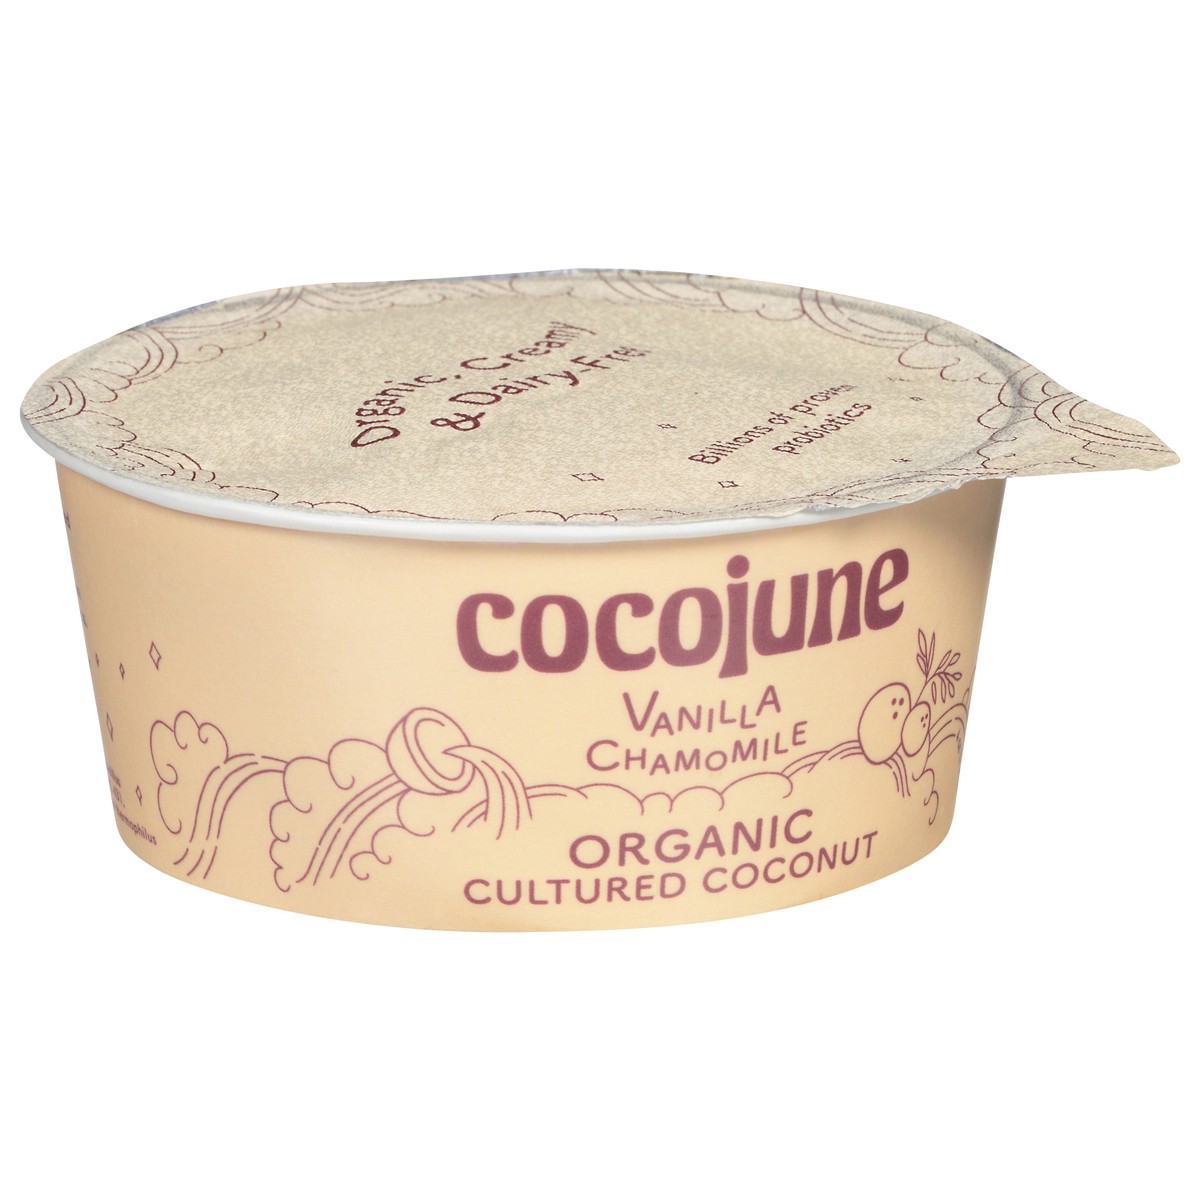 slide 2 of 9, Cocojune Organic Vanilla Chamomile Cultured Coconut, 4 fl oz